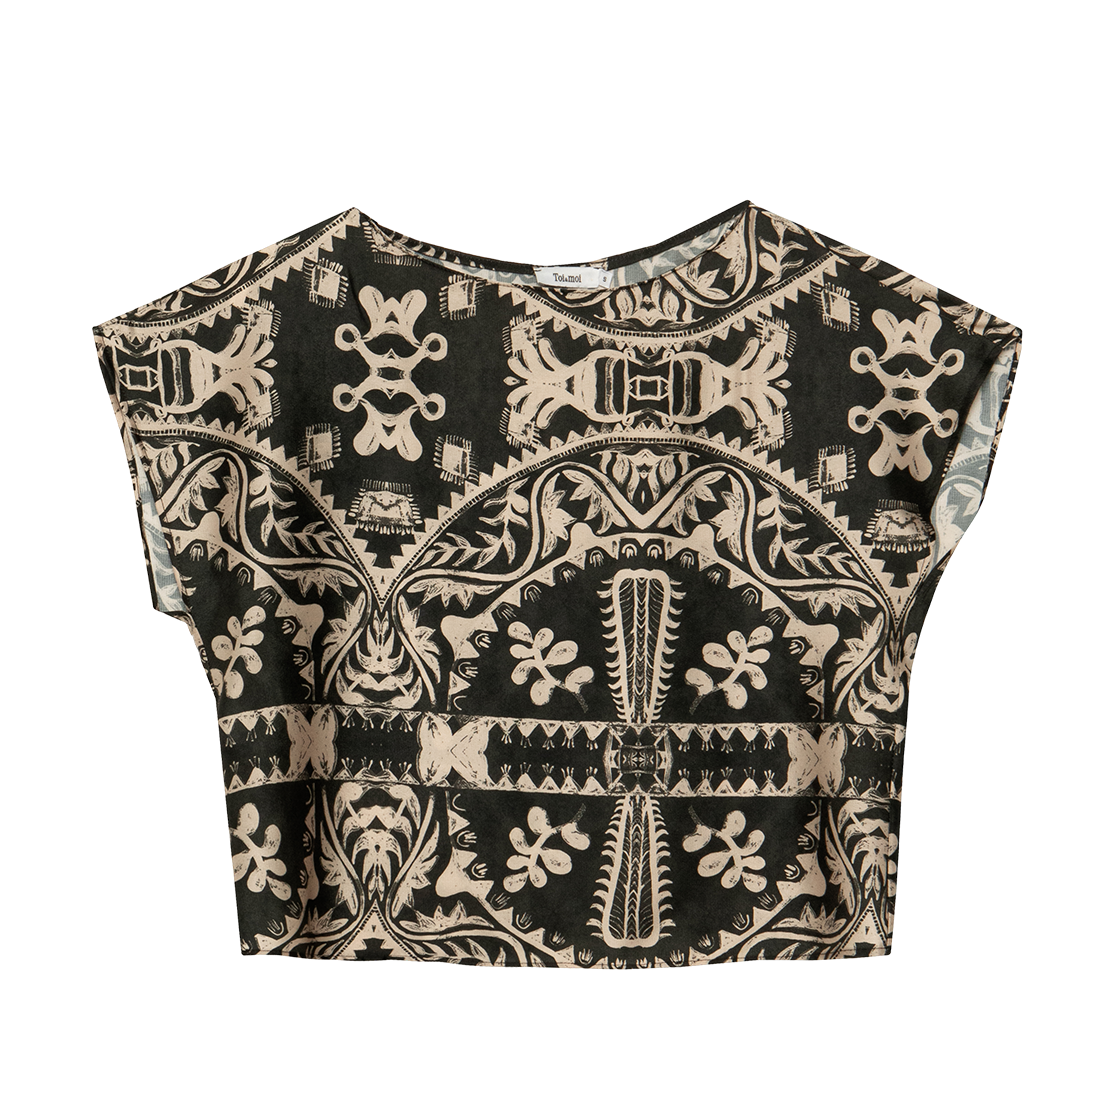 Μπουστάκι με tribal pattern μαυρο και εκρού, Toi & Moi